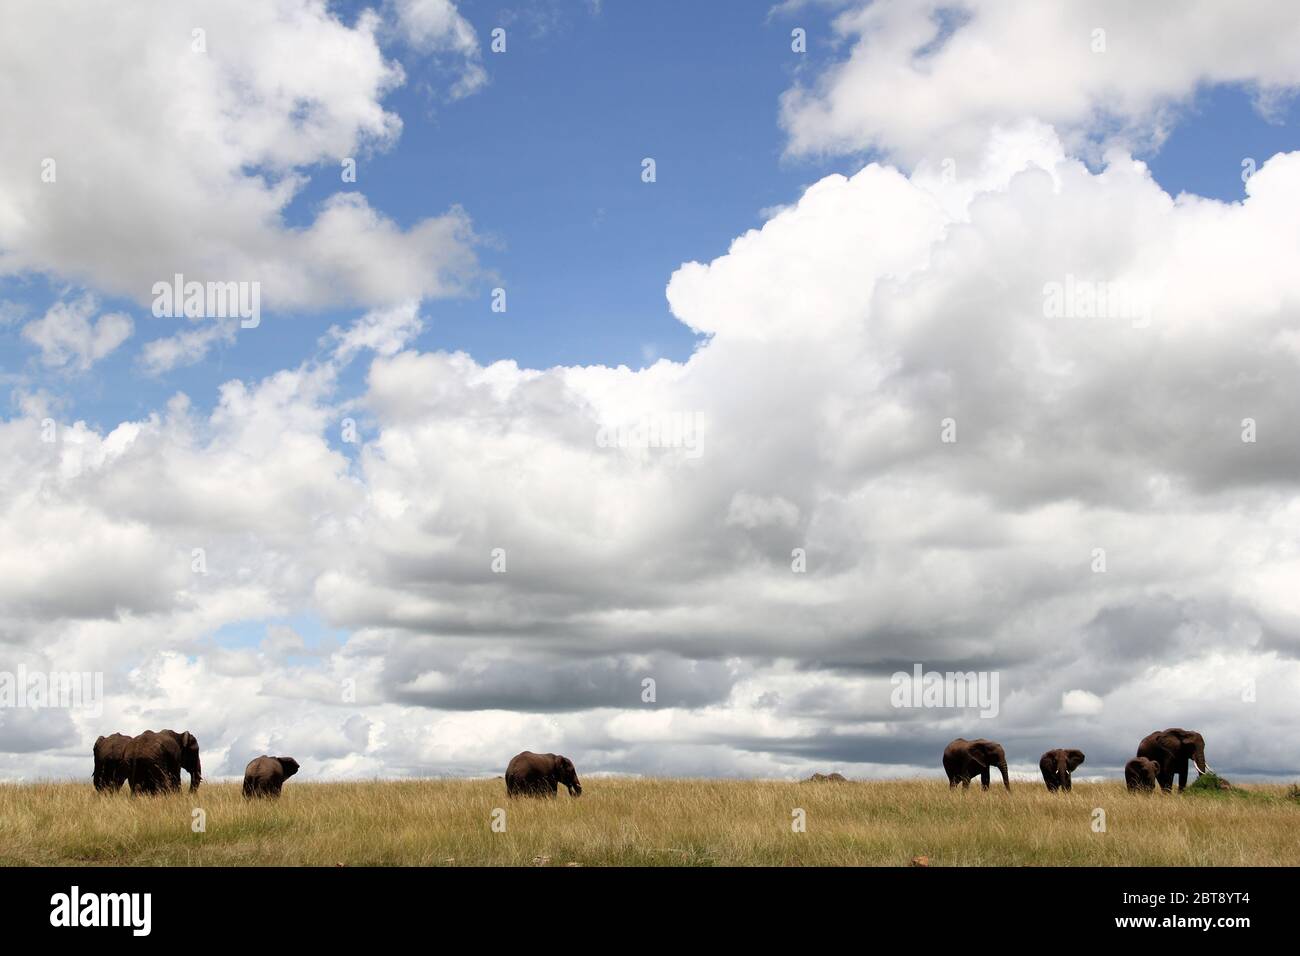 Un troupeau d'éléphants s'élance dans la savane kenyane avec des nuages imposants dans le ciel Banque D'Images